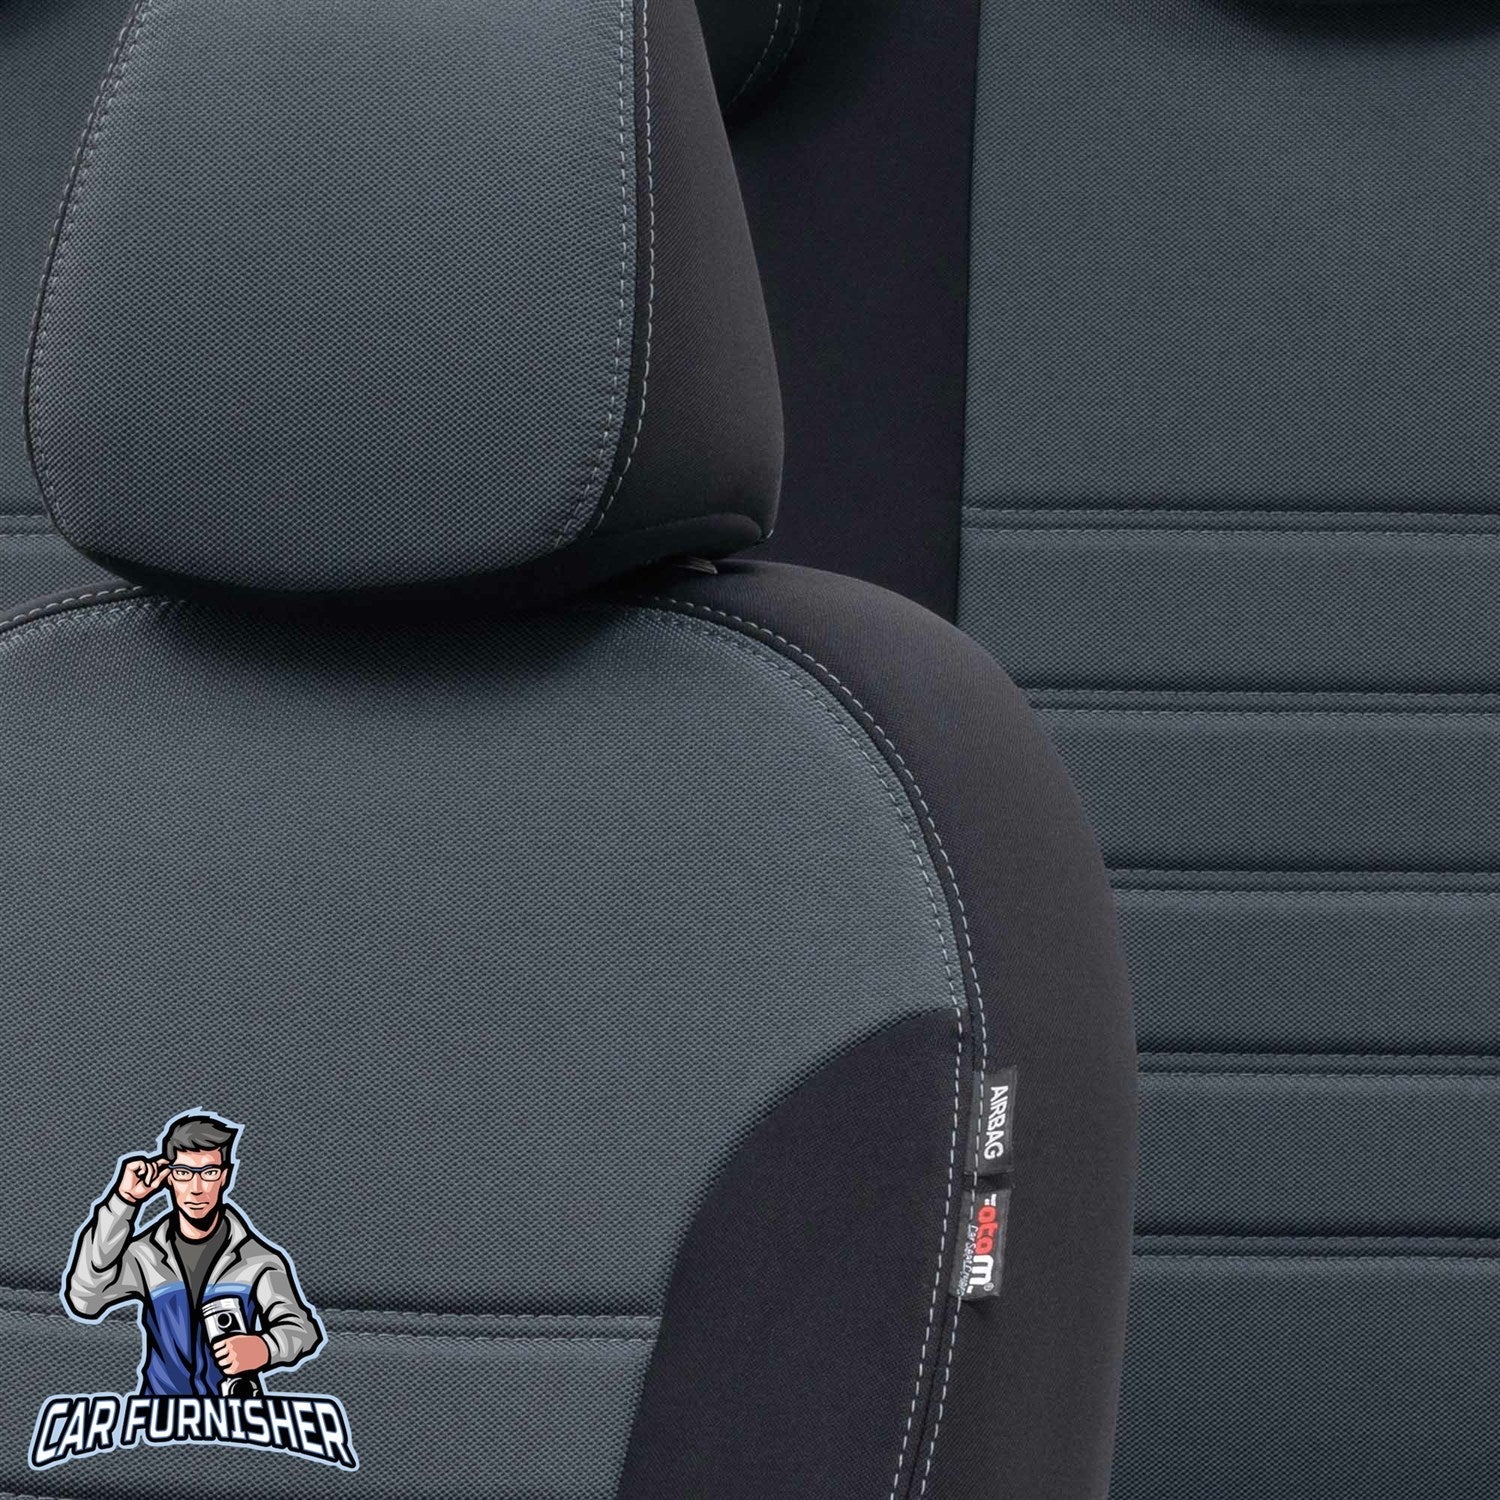 Dacia Sandero Seat Covers Original Jacquard Design Smoked Black Jacquard Fabric